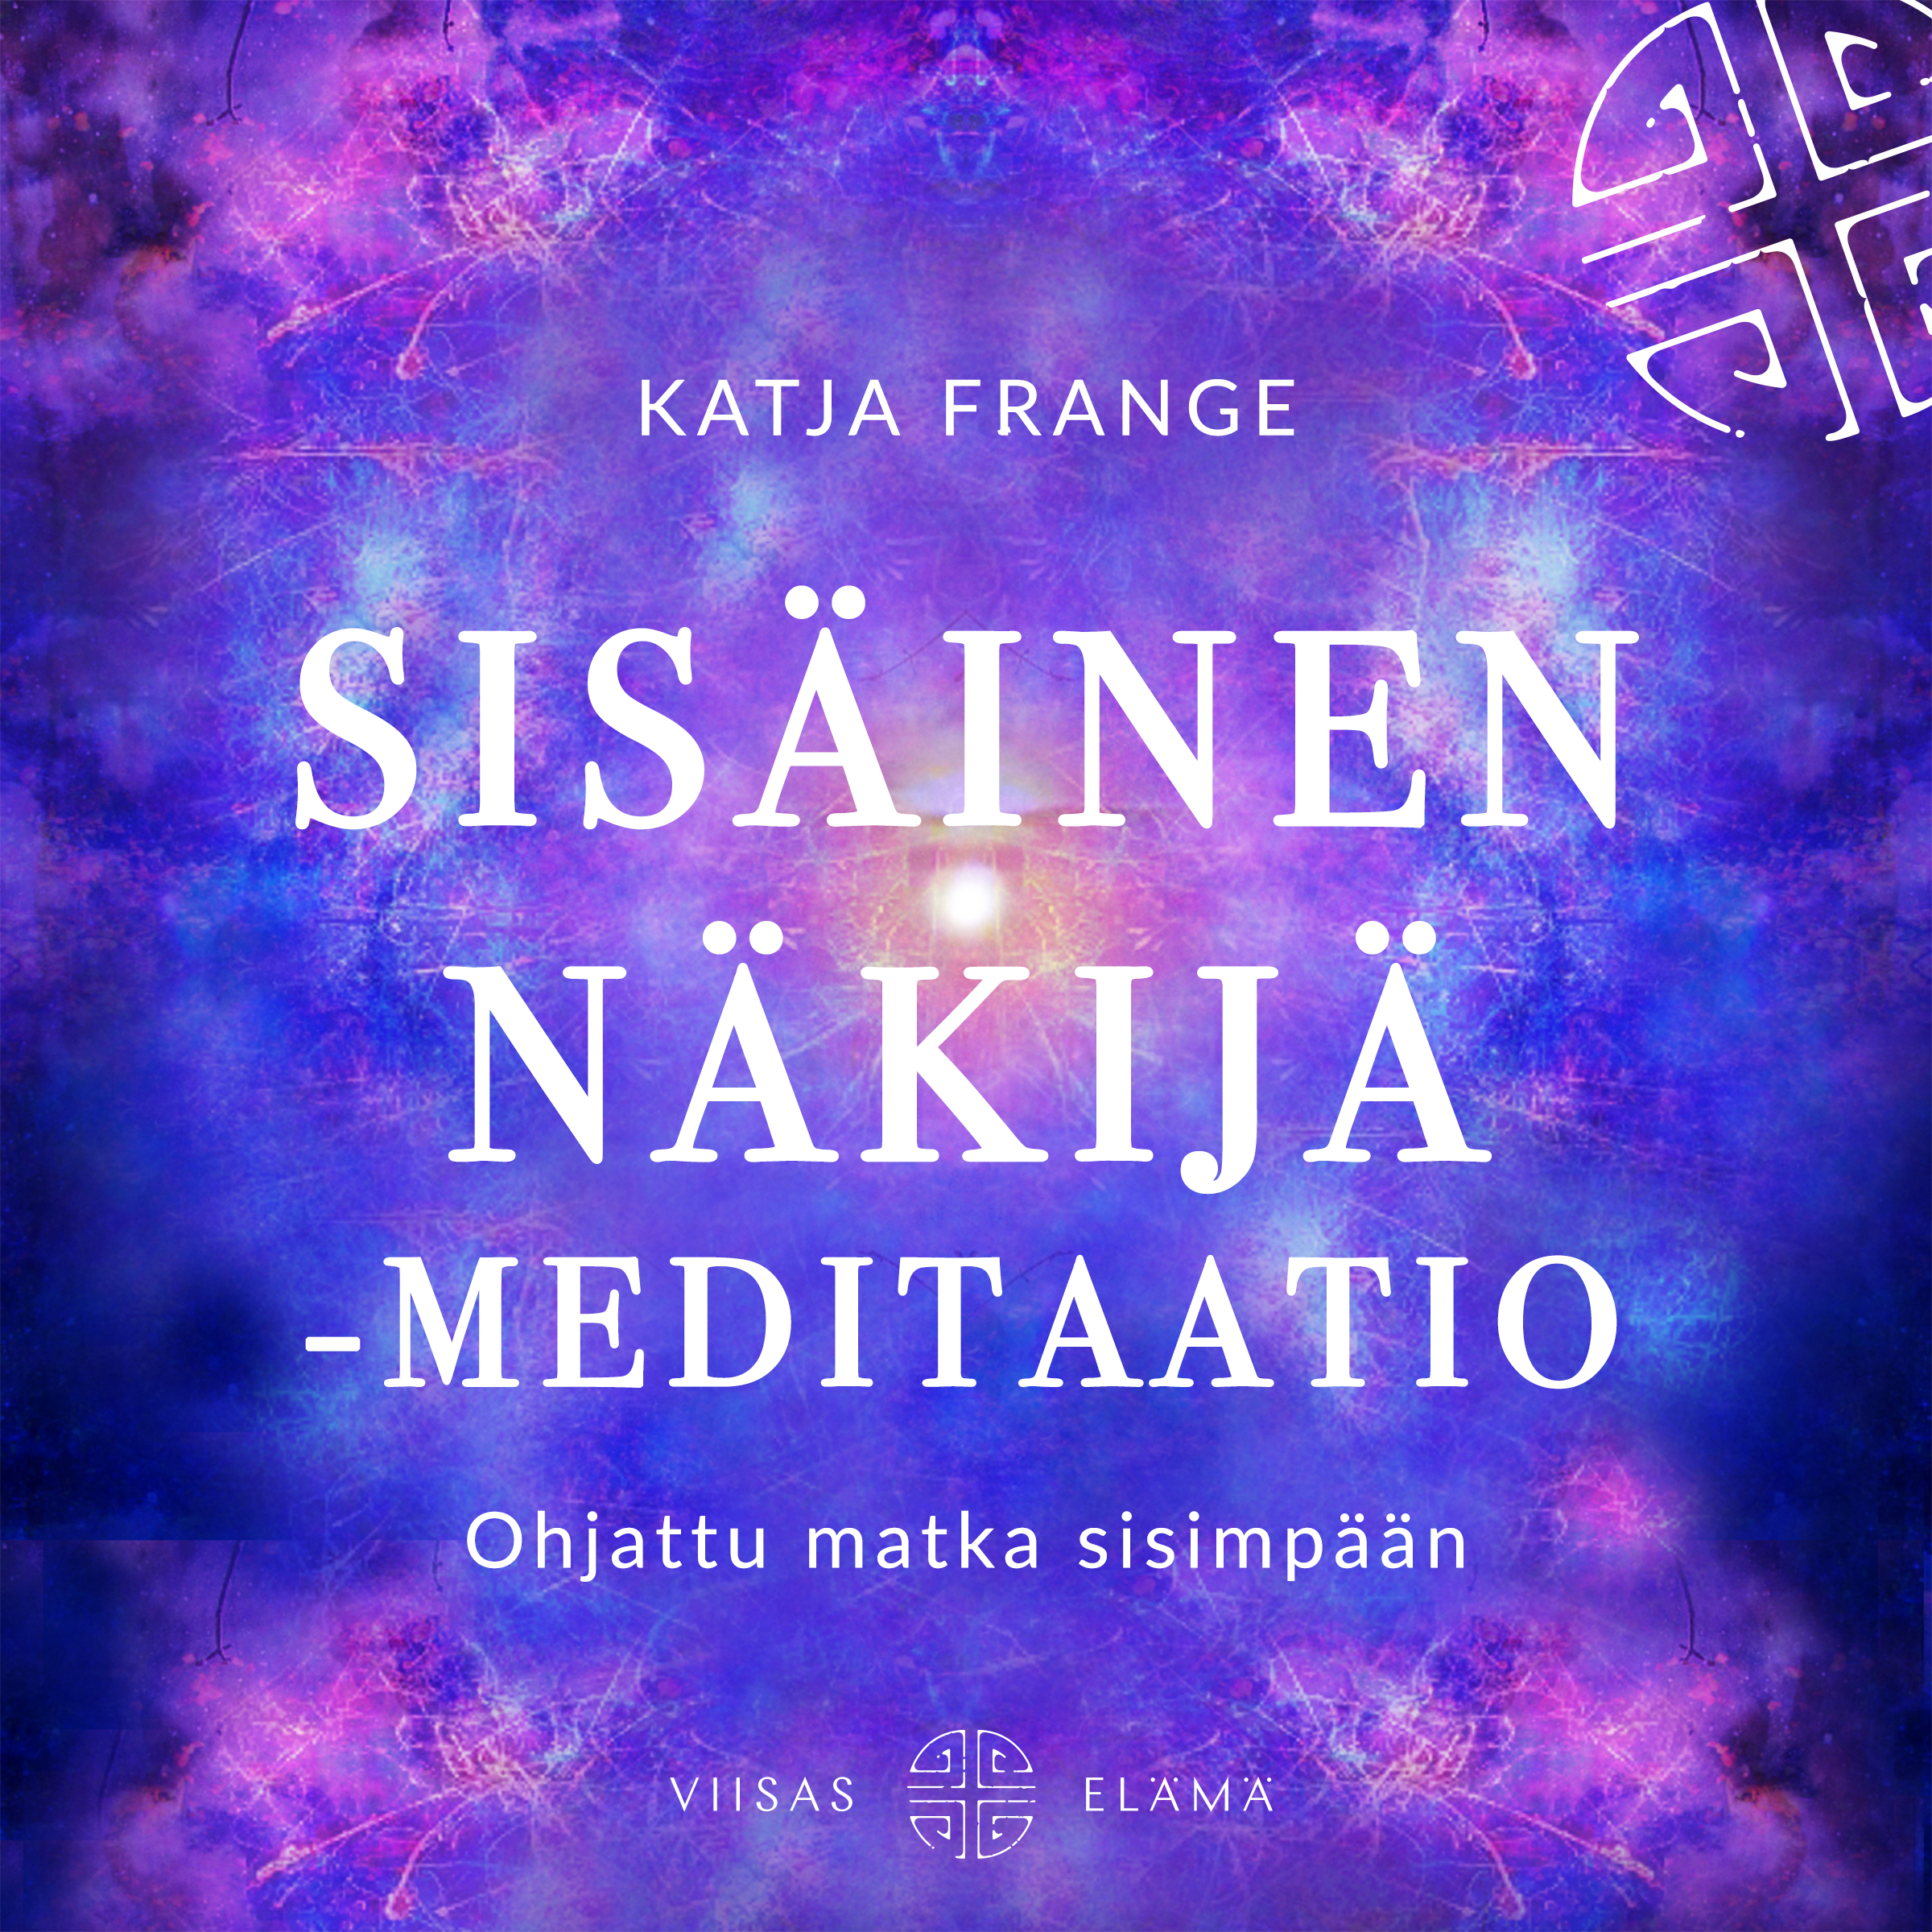 Frange, Katja - Sisäinen näkijä -meditaatio, äänikirja